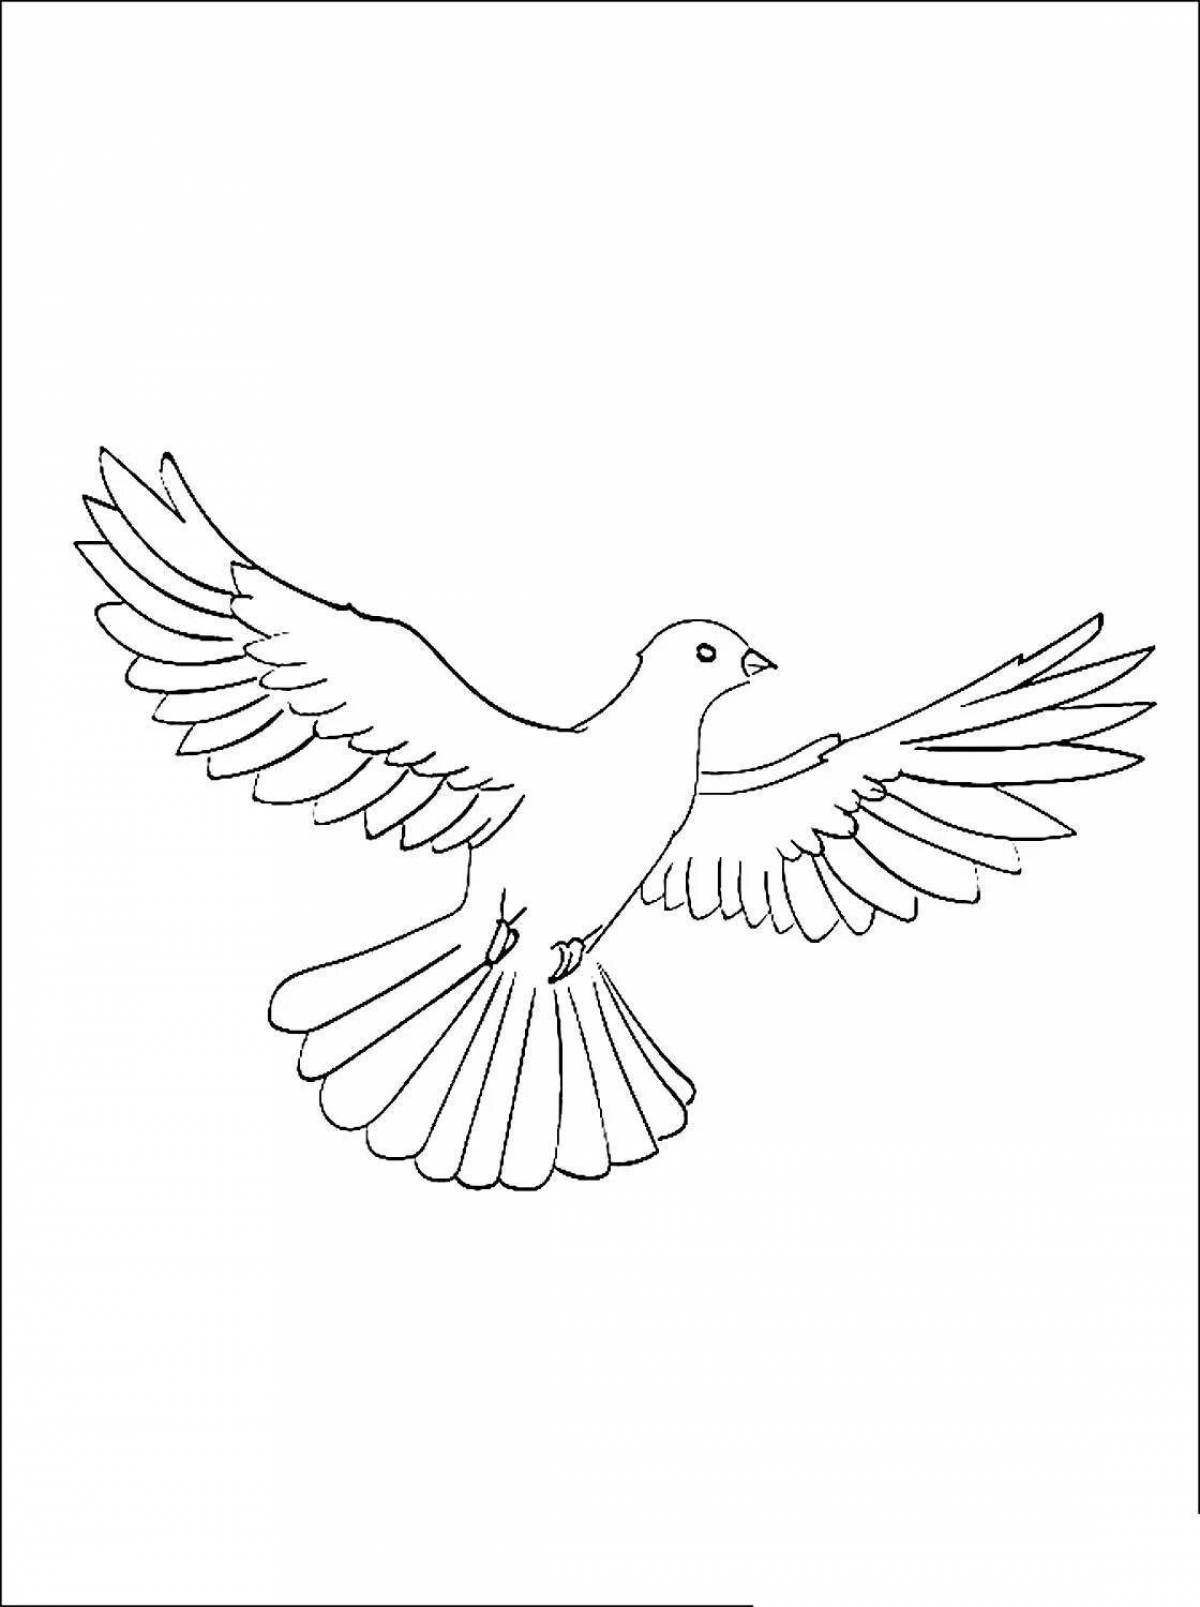 Изысканная раскраска с изображением голубя